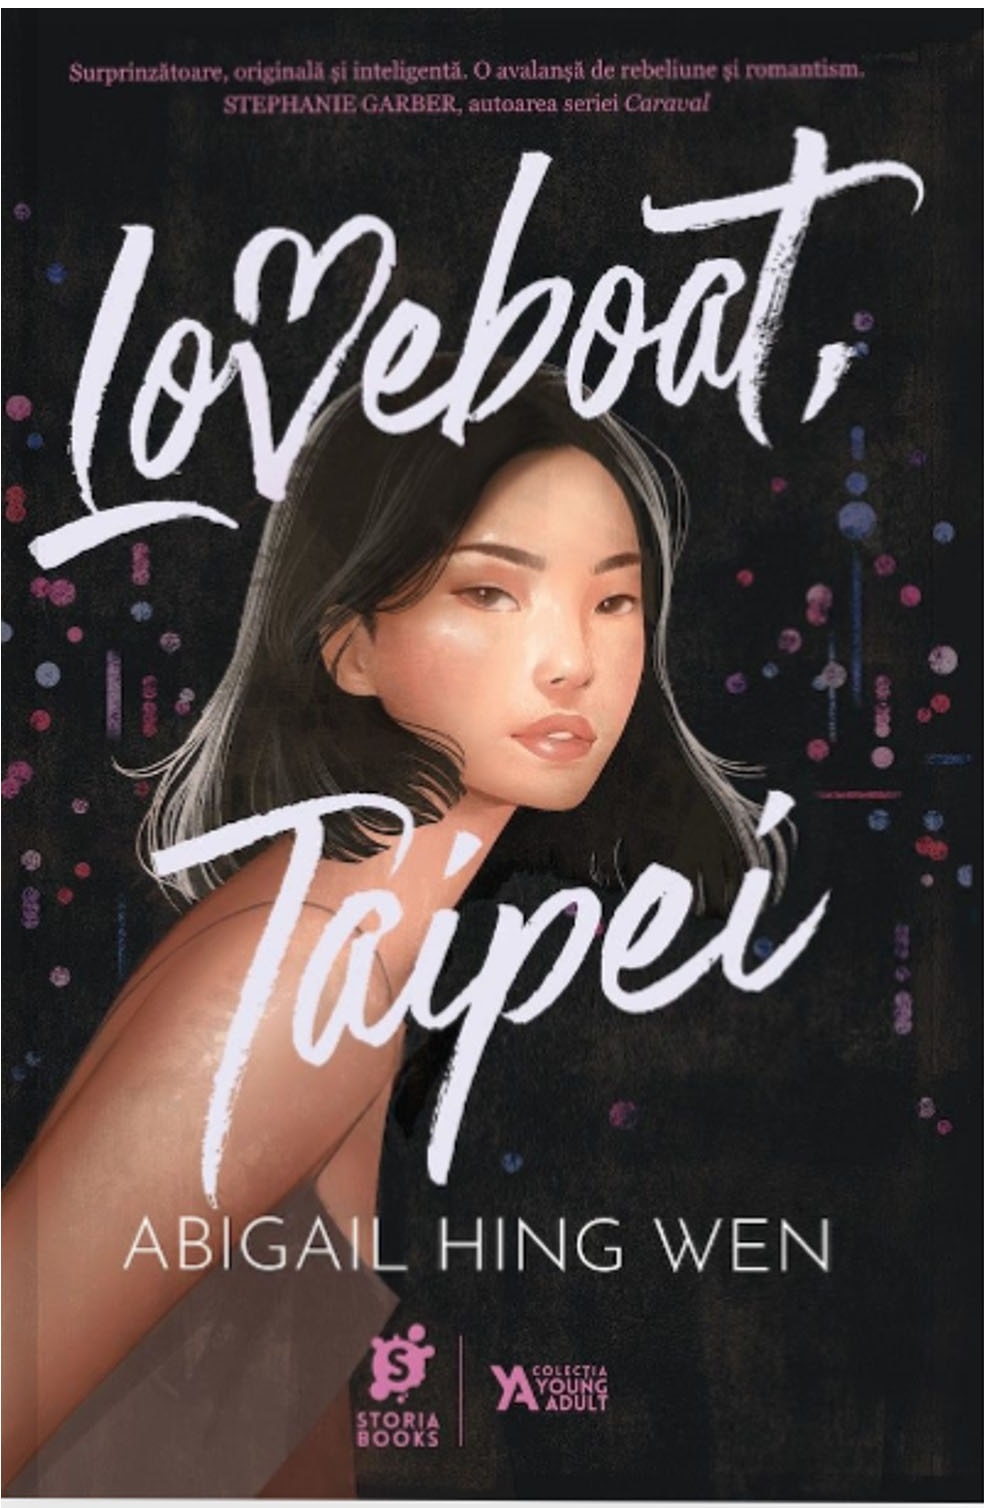 Loveboat, Taipei | Abigail Hing Wen